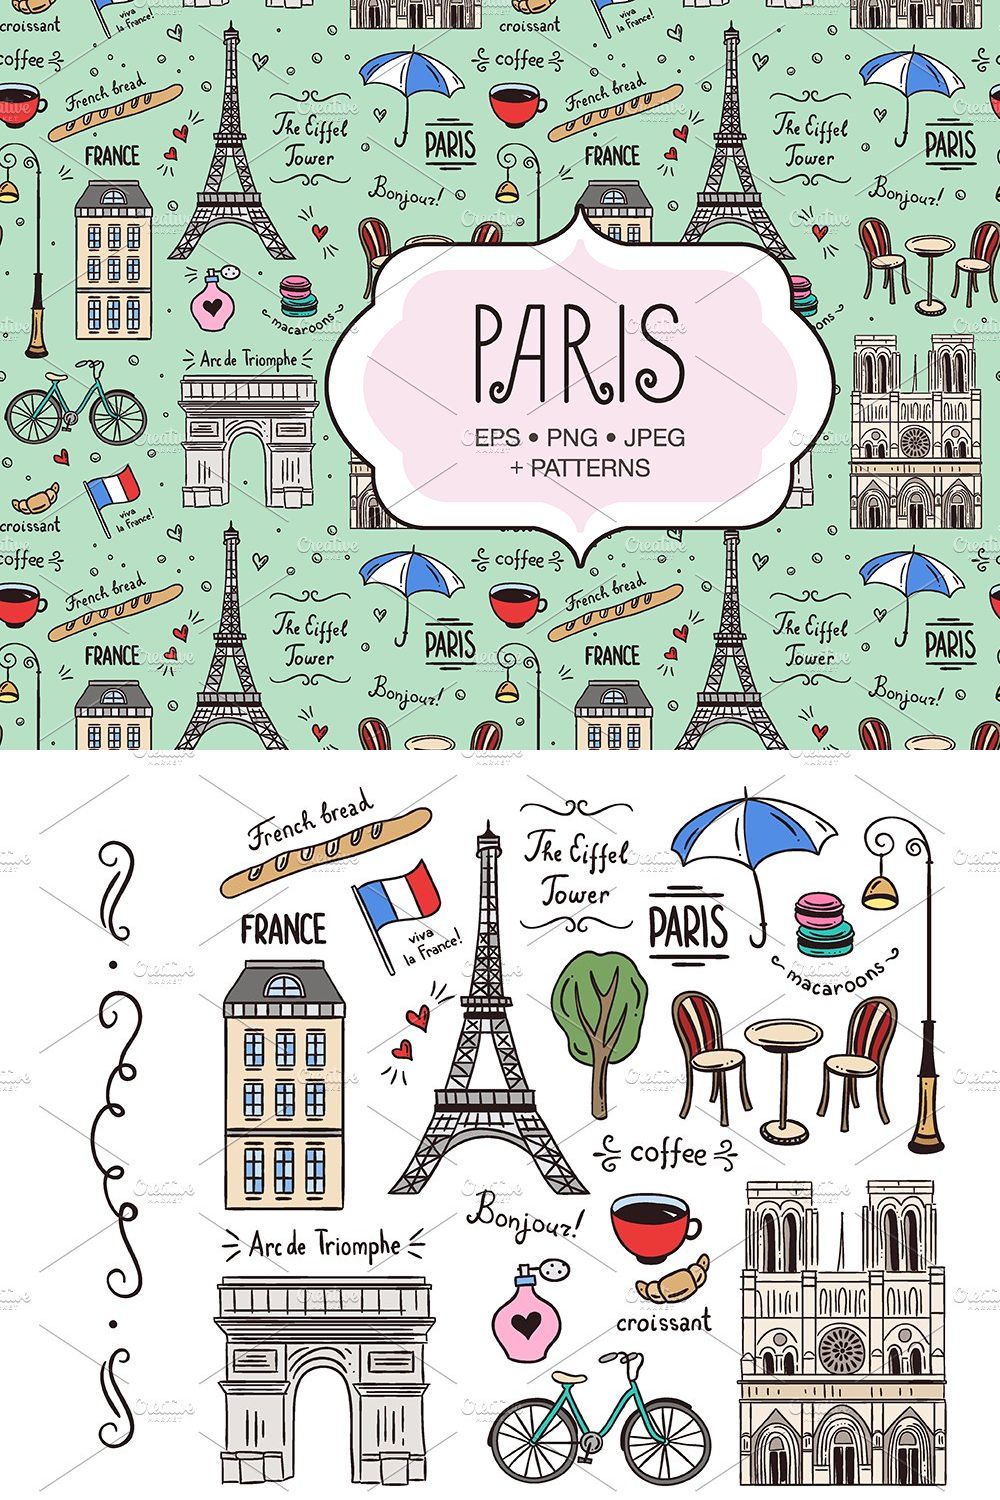 Paris Illustrations & Patterns pinterest preview image.